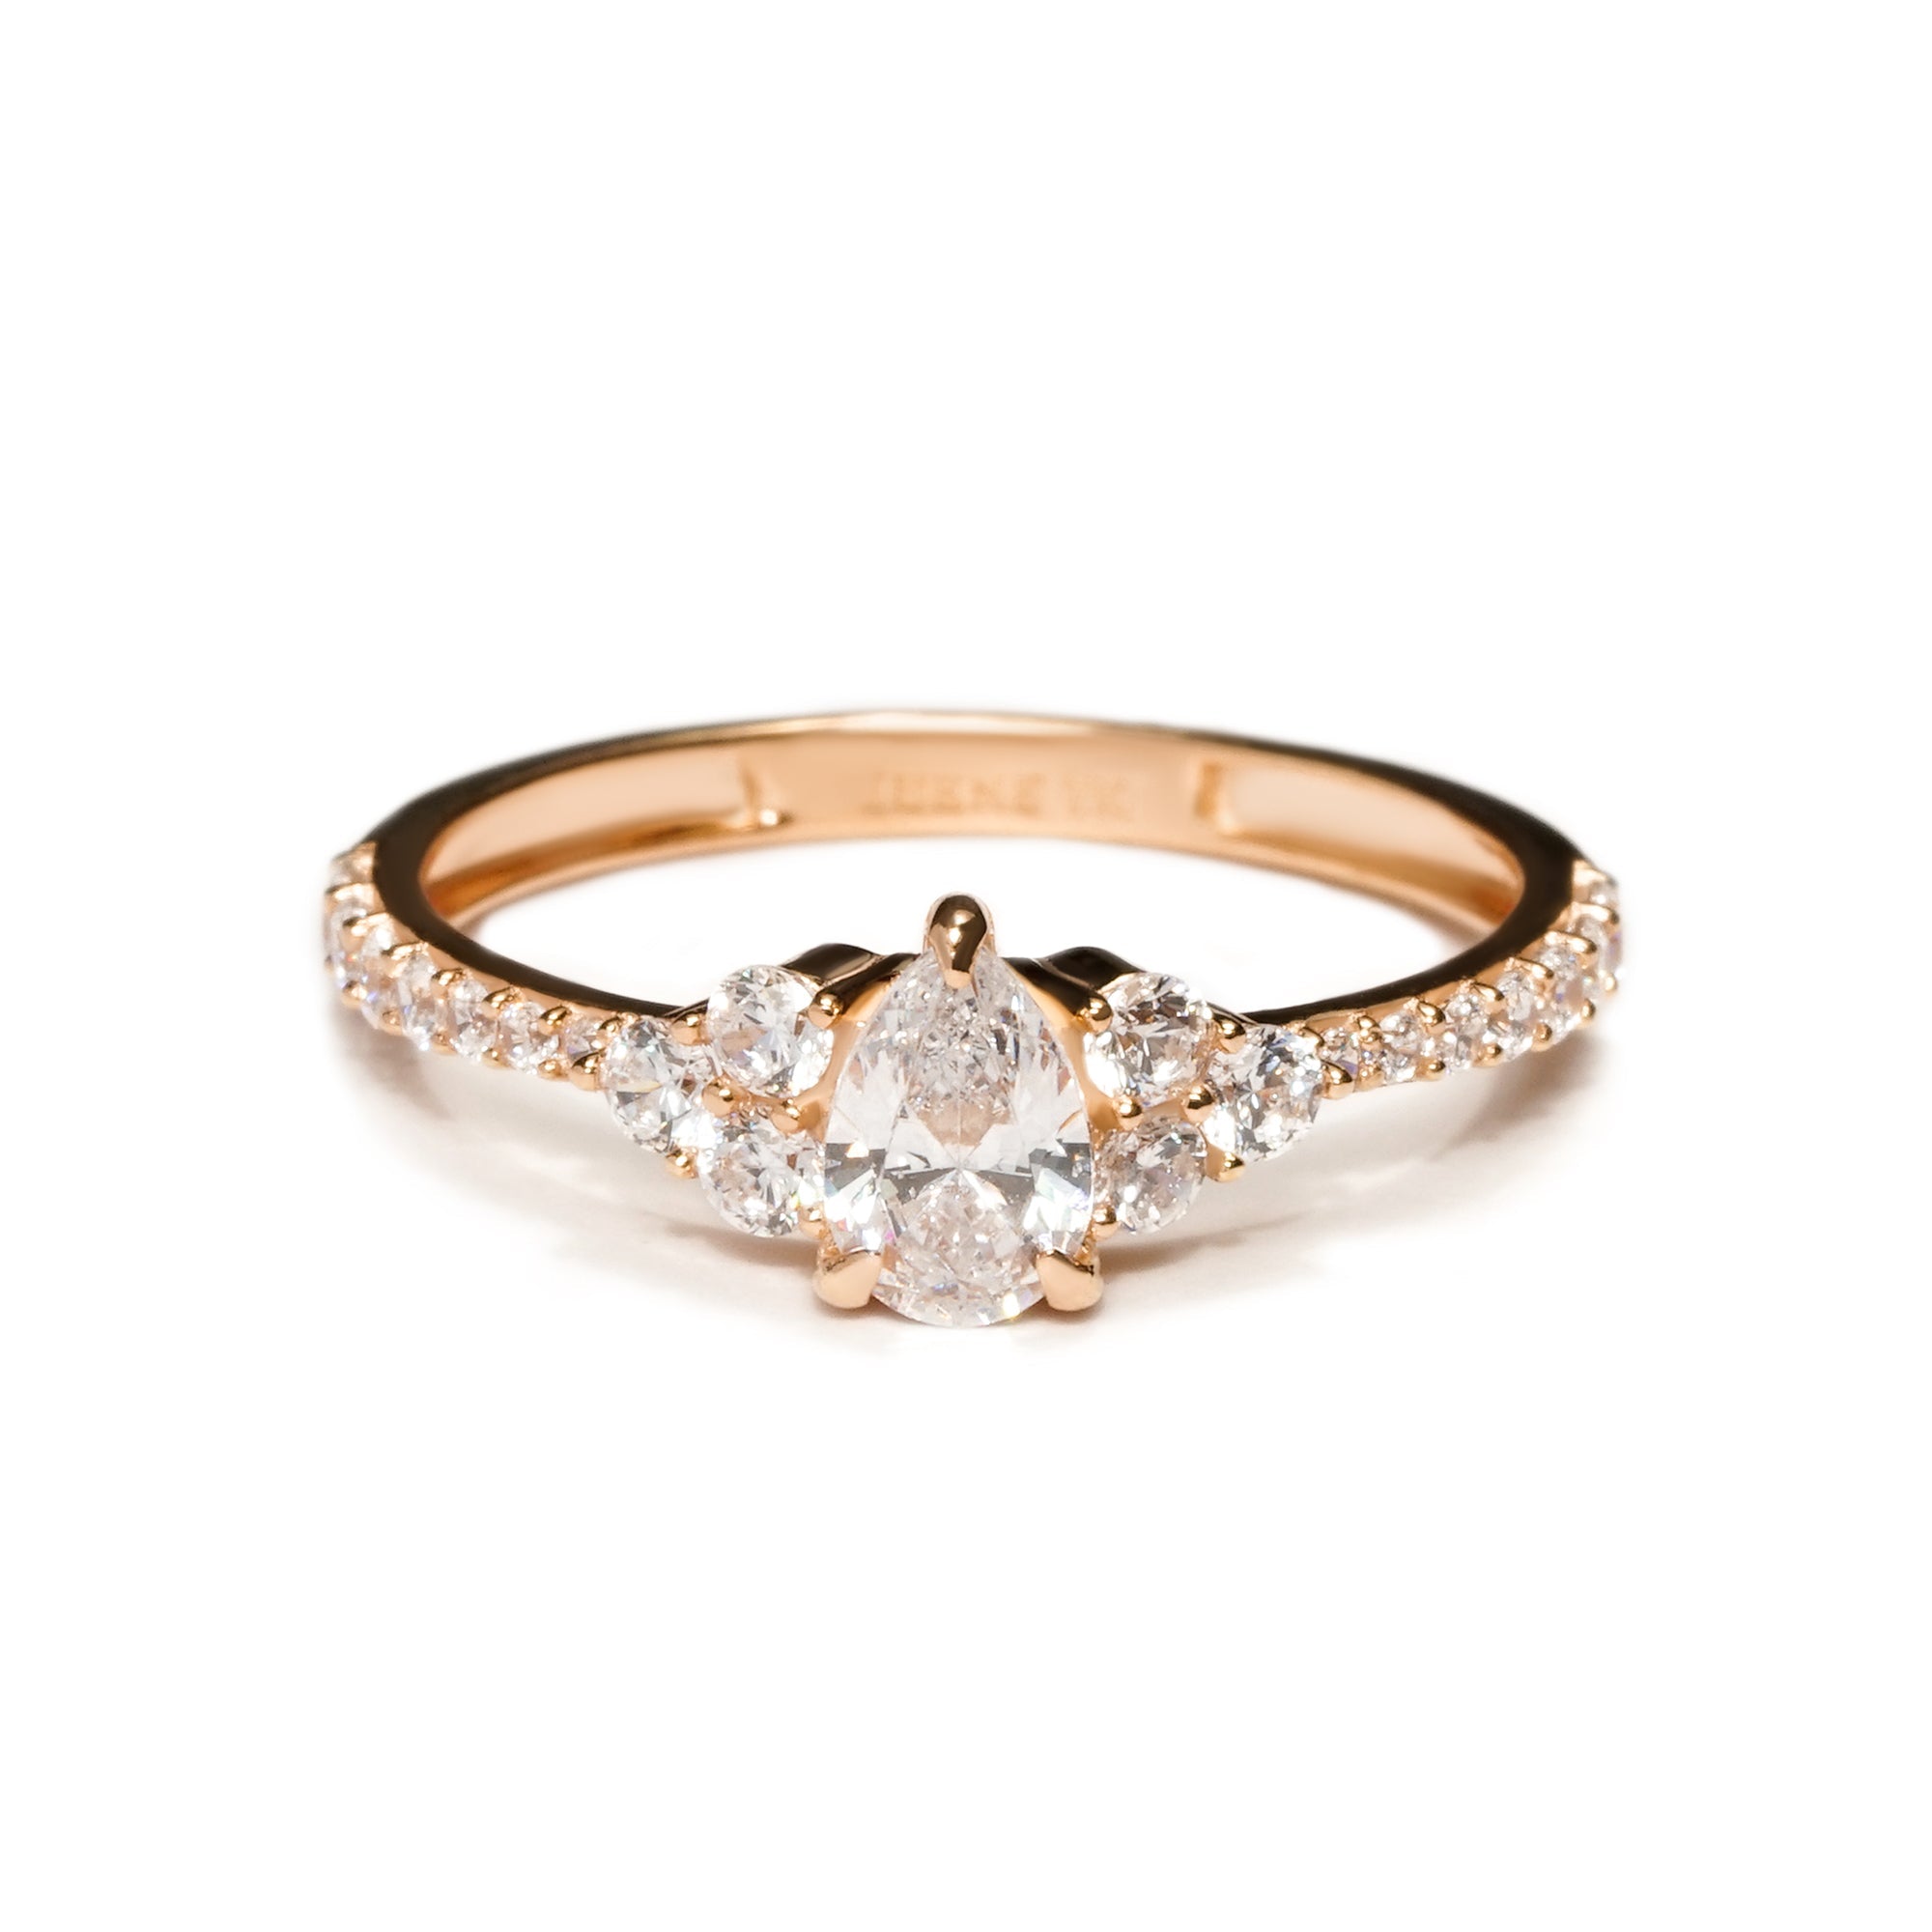 Daniya Gold Ring - Serene Collection - Juene